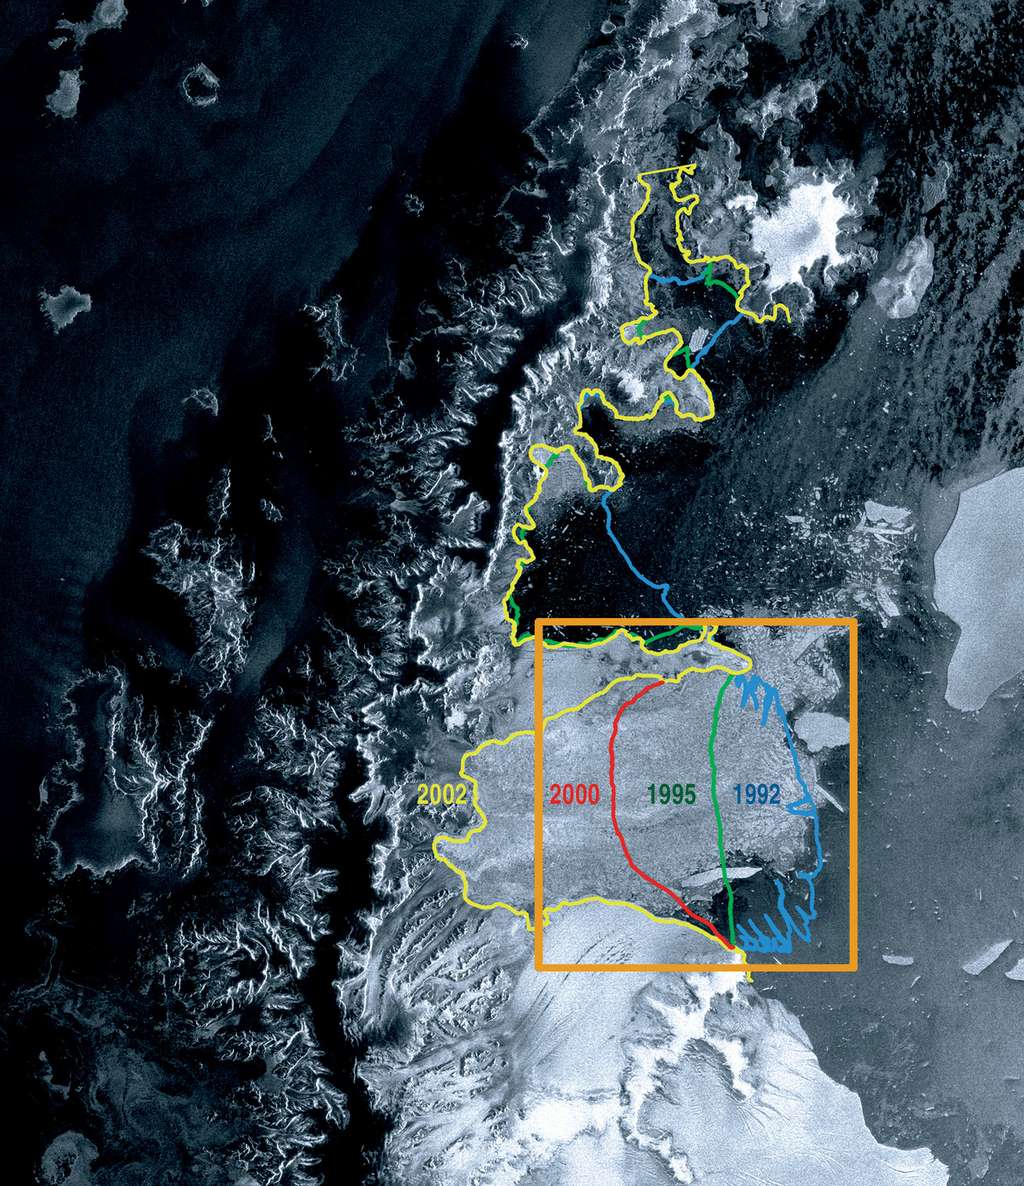 Une des premières photographies prises par Envisat après sa mise en orbite en 2002. La position relative de la plateforme Larsen B avait été étudiée auparavant par les satellites ERS-1 et ERS-2. Entre 1992 (ligne bleue) et 2002 (ligne jaune), la glace avait déjà reculé d'environ 100 km. © Esa